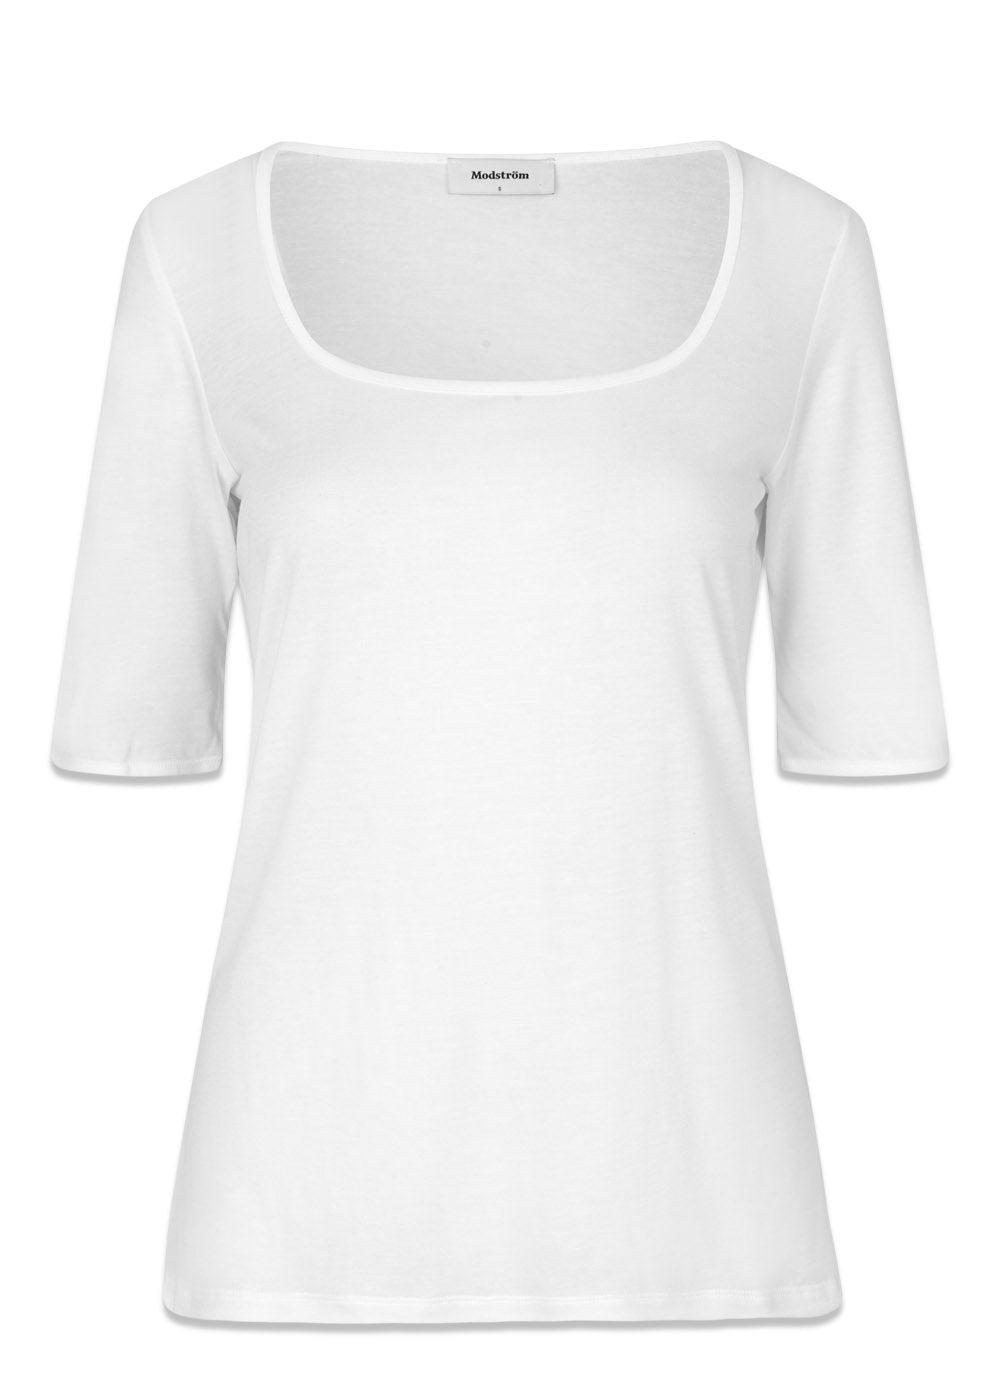 Modströms TempoMD t-shirt - White. Køb t-shirts her.